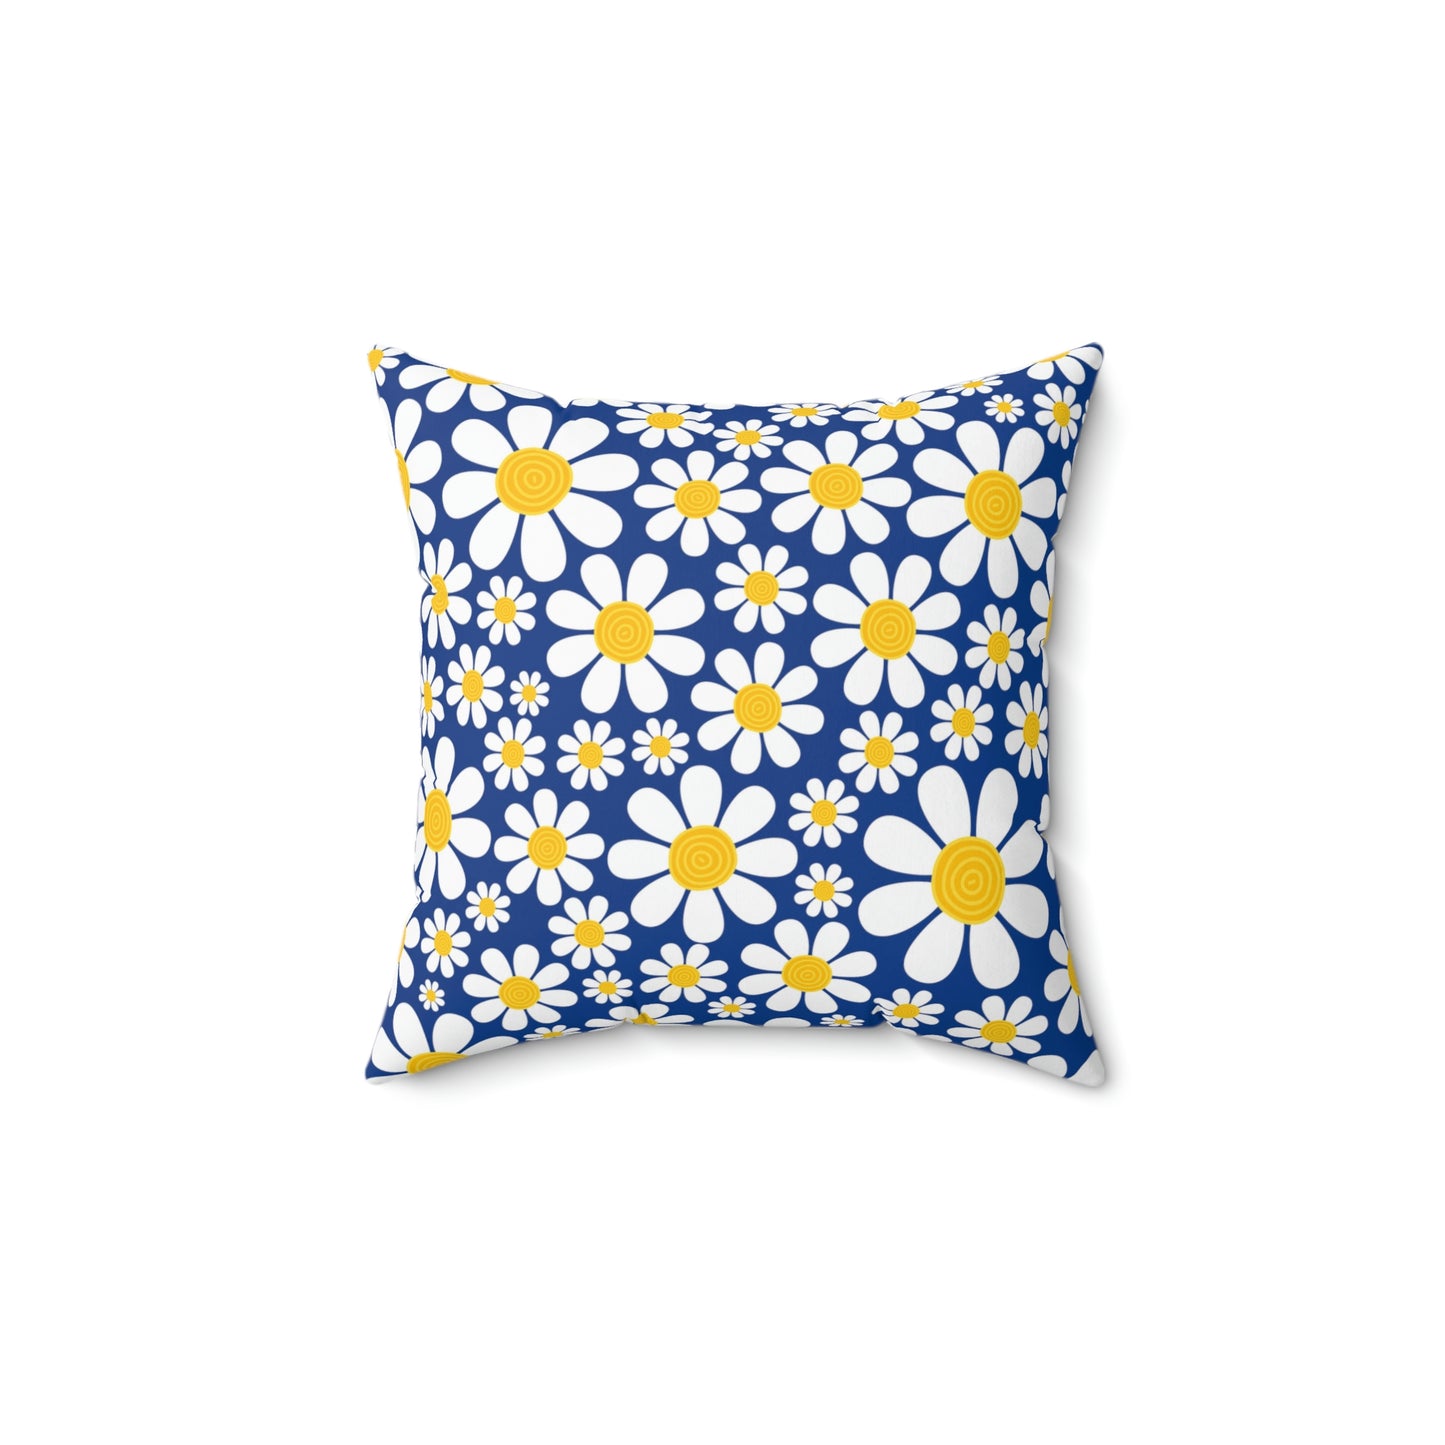 Daisy Pillow / Blue Throw Pillow